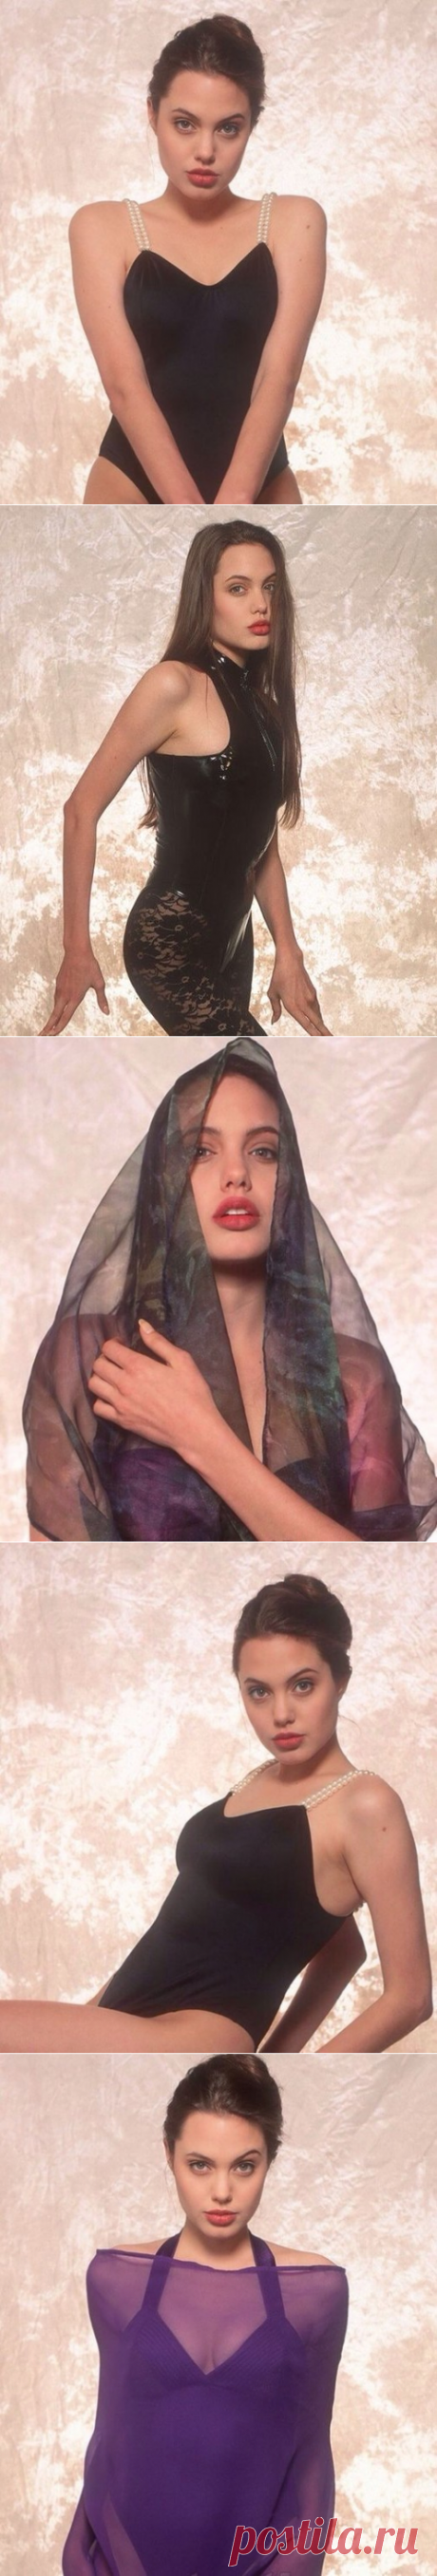 Фотосессия 16-летней Анджелины Джоли, 1991 г.